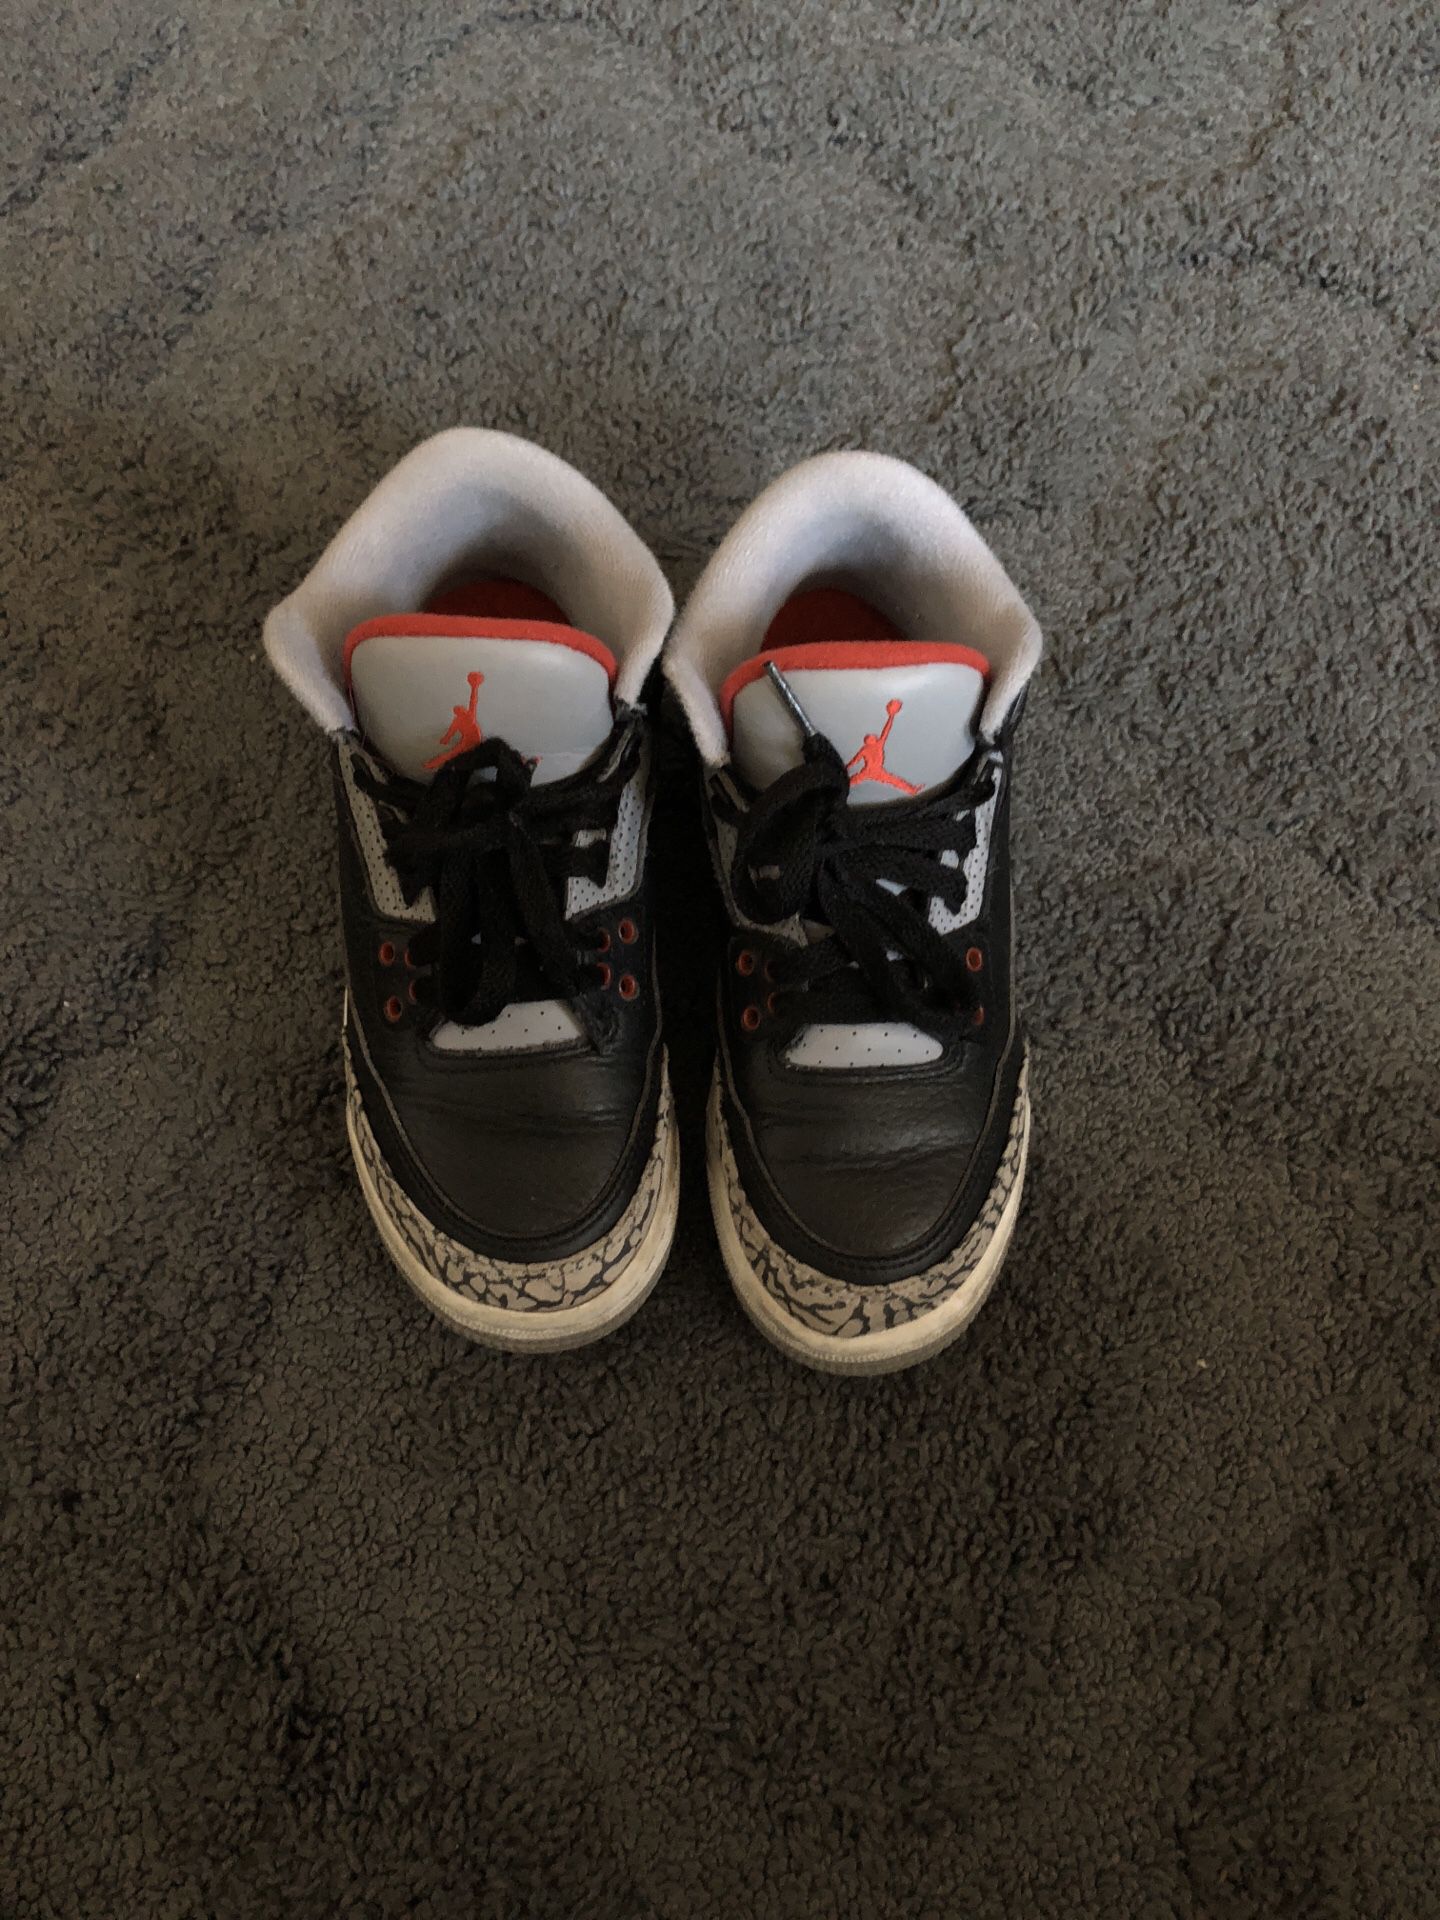 Kids Nike AiR Jordan 3 cement